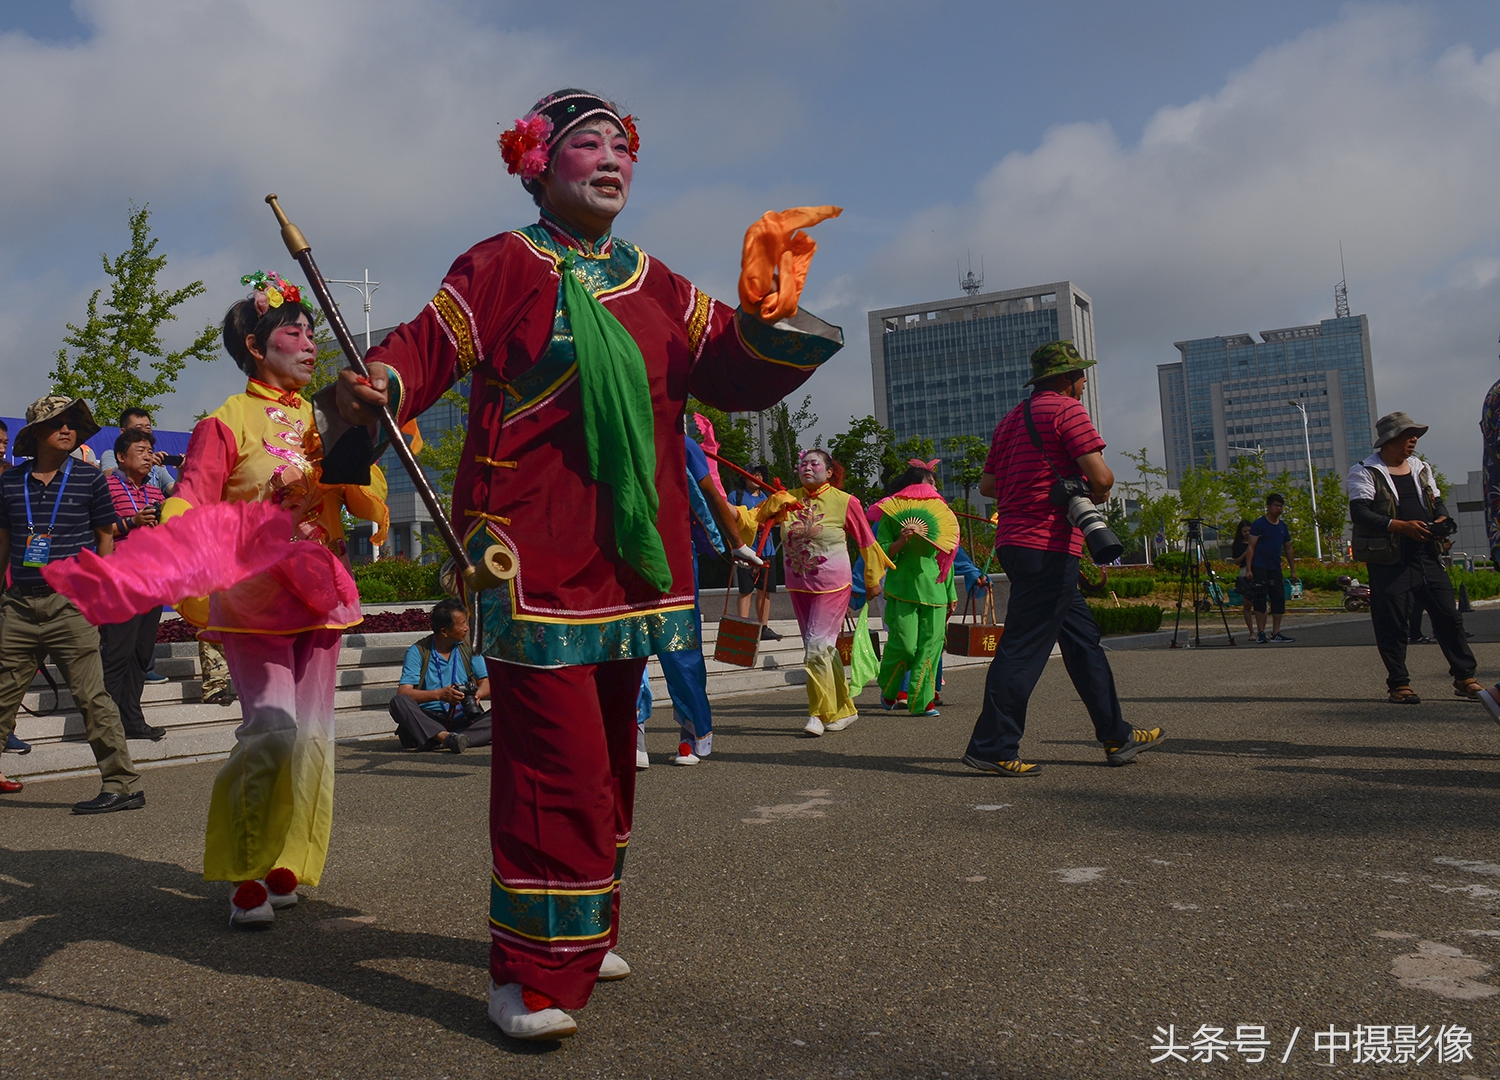 海阳大秧歌是一种古老的传统民间舞蹈,集歌,舞,戏于一体的民间艺术